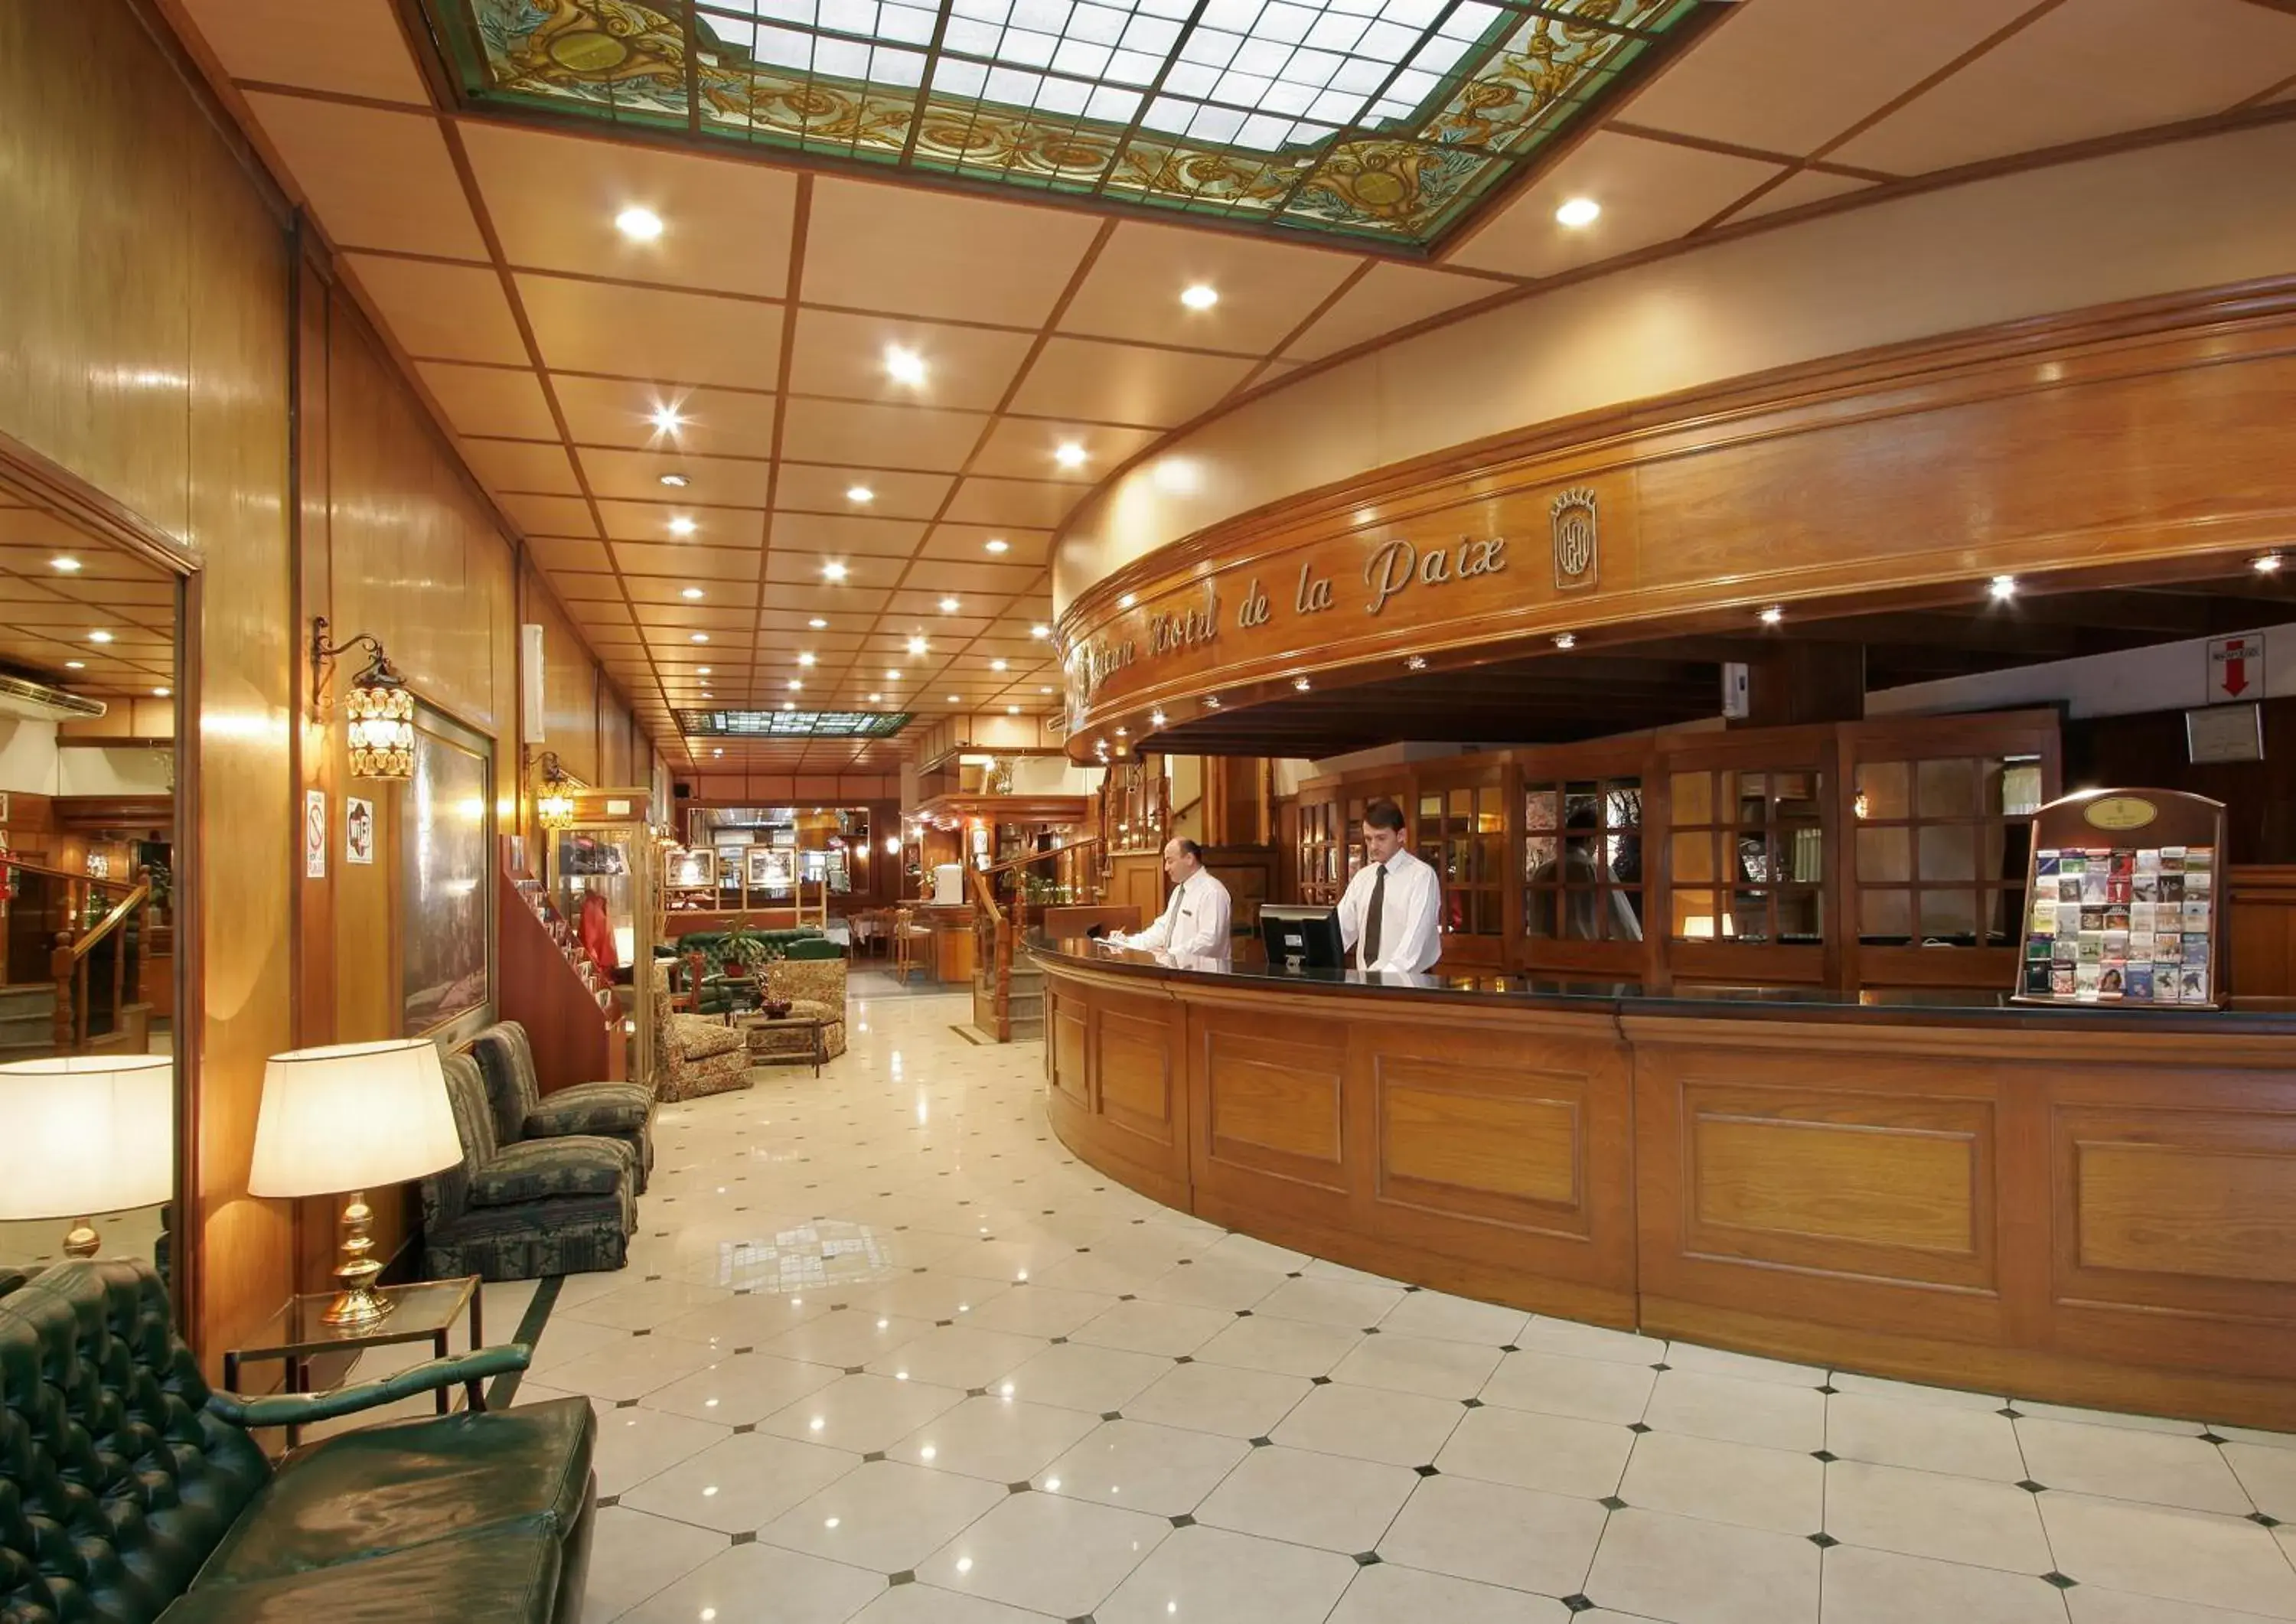 Lobby or reception in Gran Hotel De La Paix